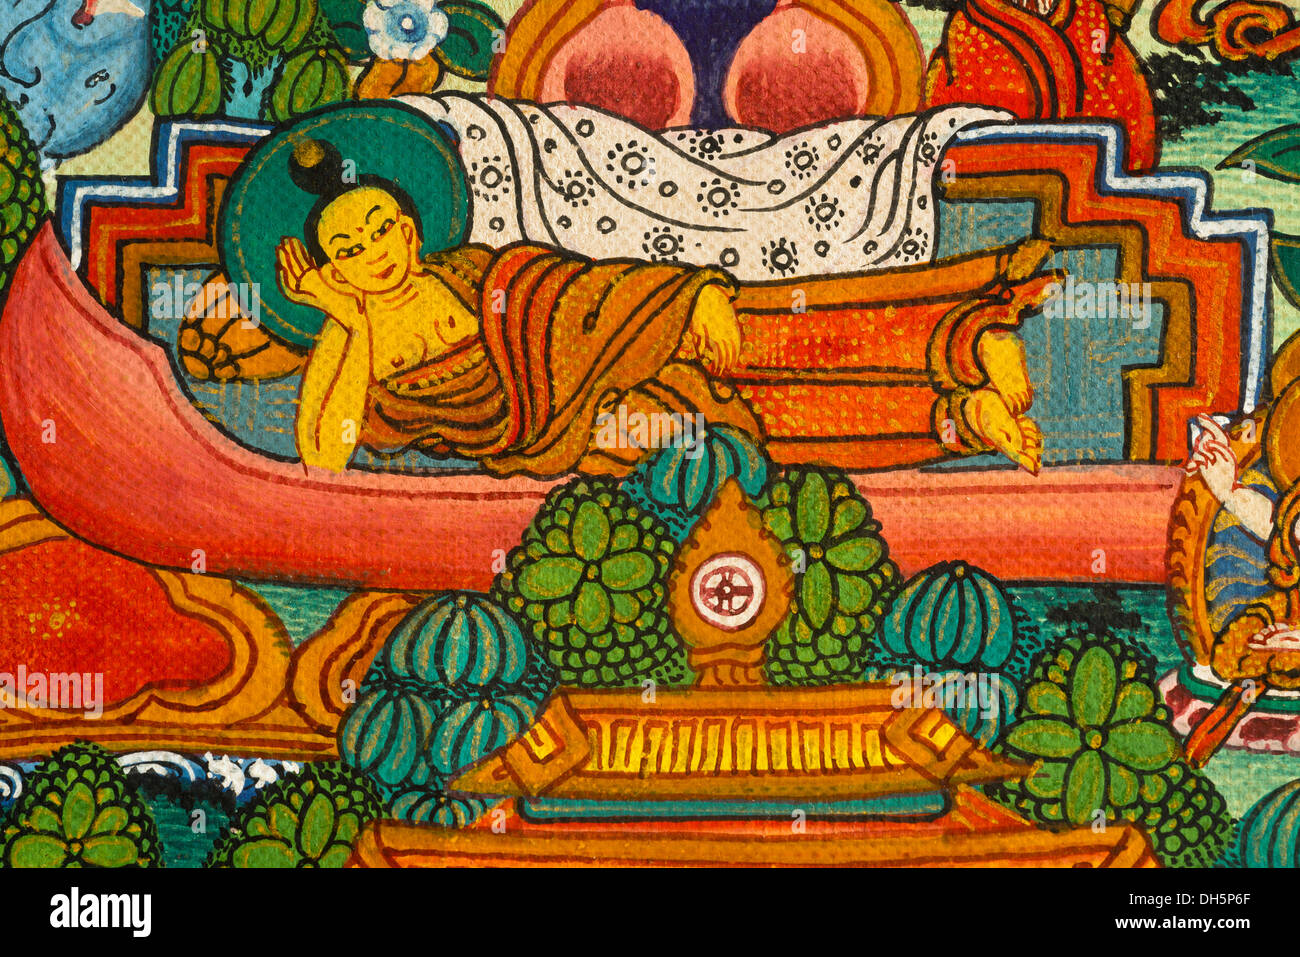 Bouddha couché, de repos au cours de la transition vers le nirvana, représentation sur un scroll, thangka du bouddhisme tantrique Banque D'Images